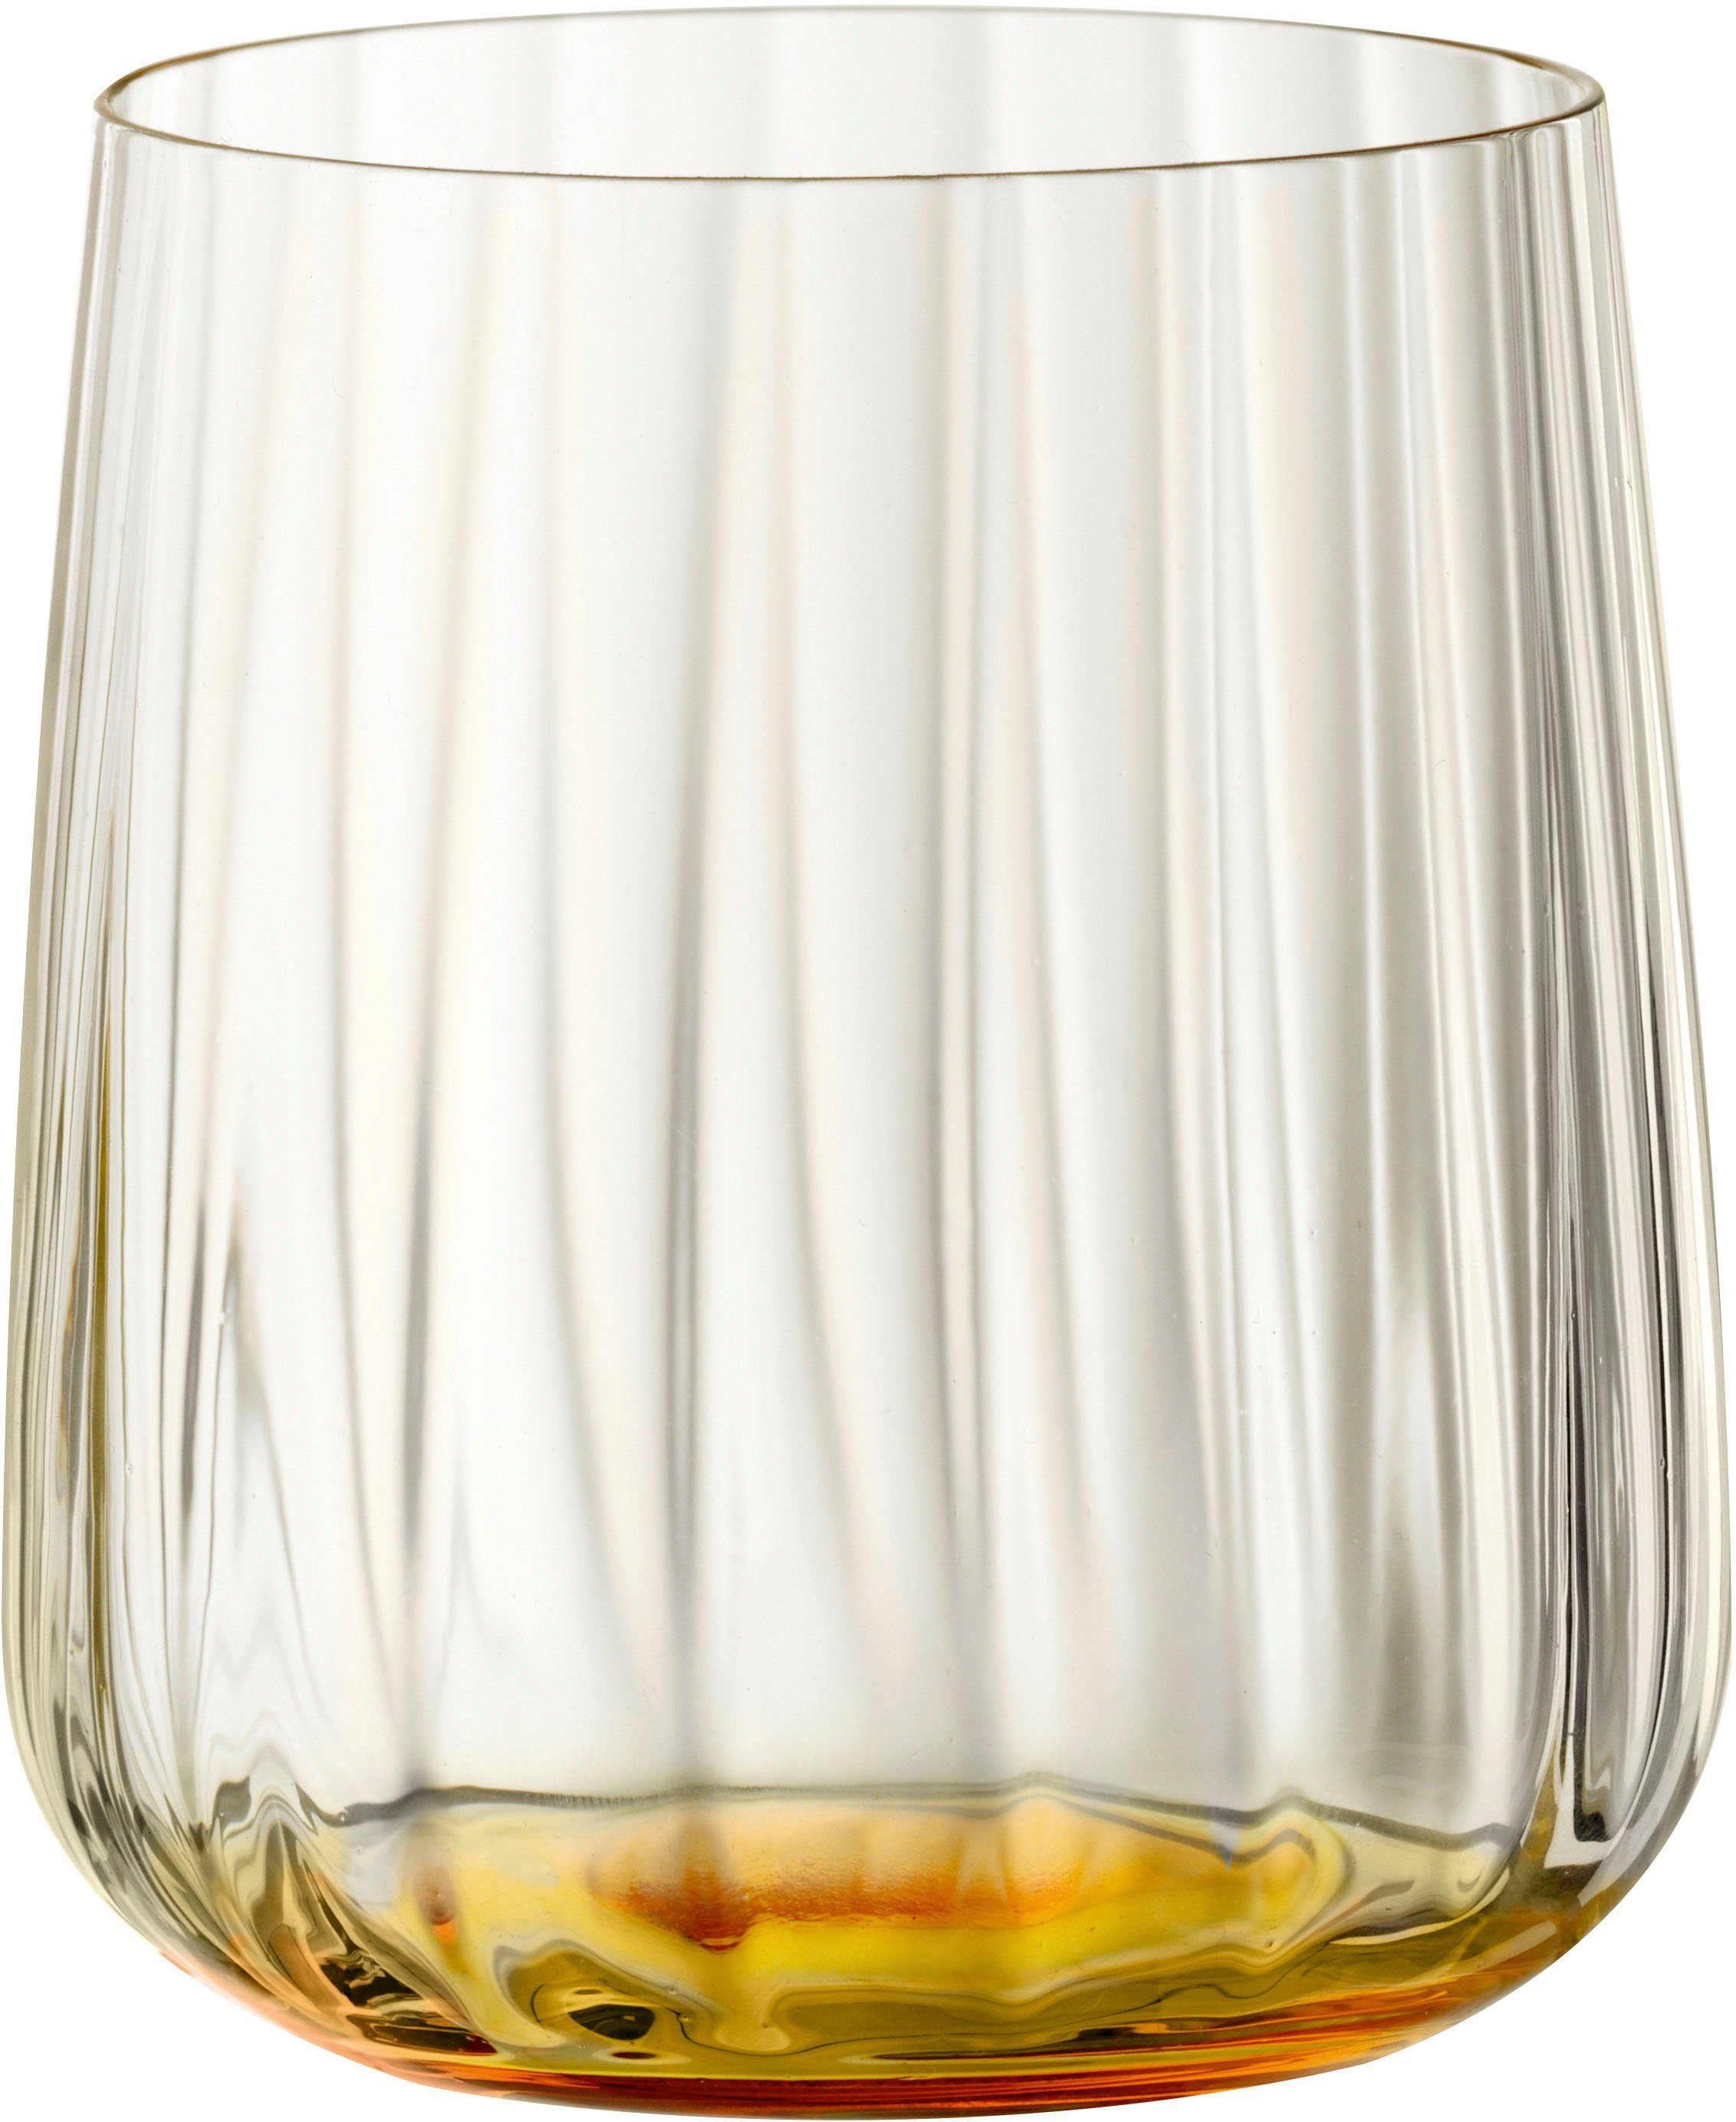 SPIEGELAU Becher LifeStyle, Kristallglas, 340 ml, 2-teilig sun